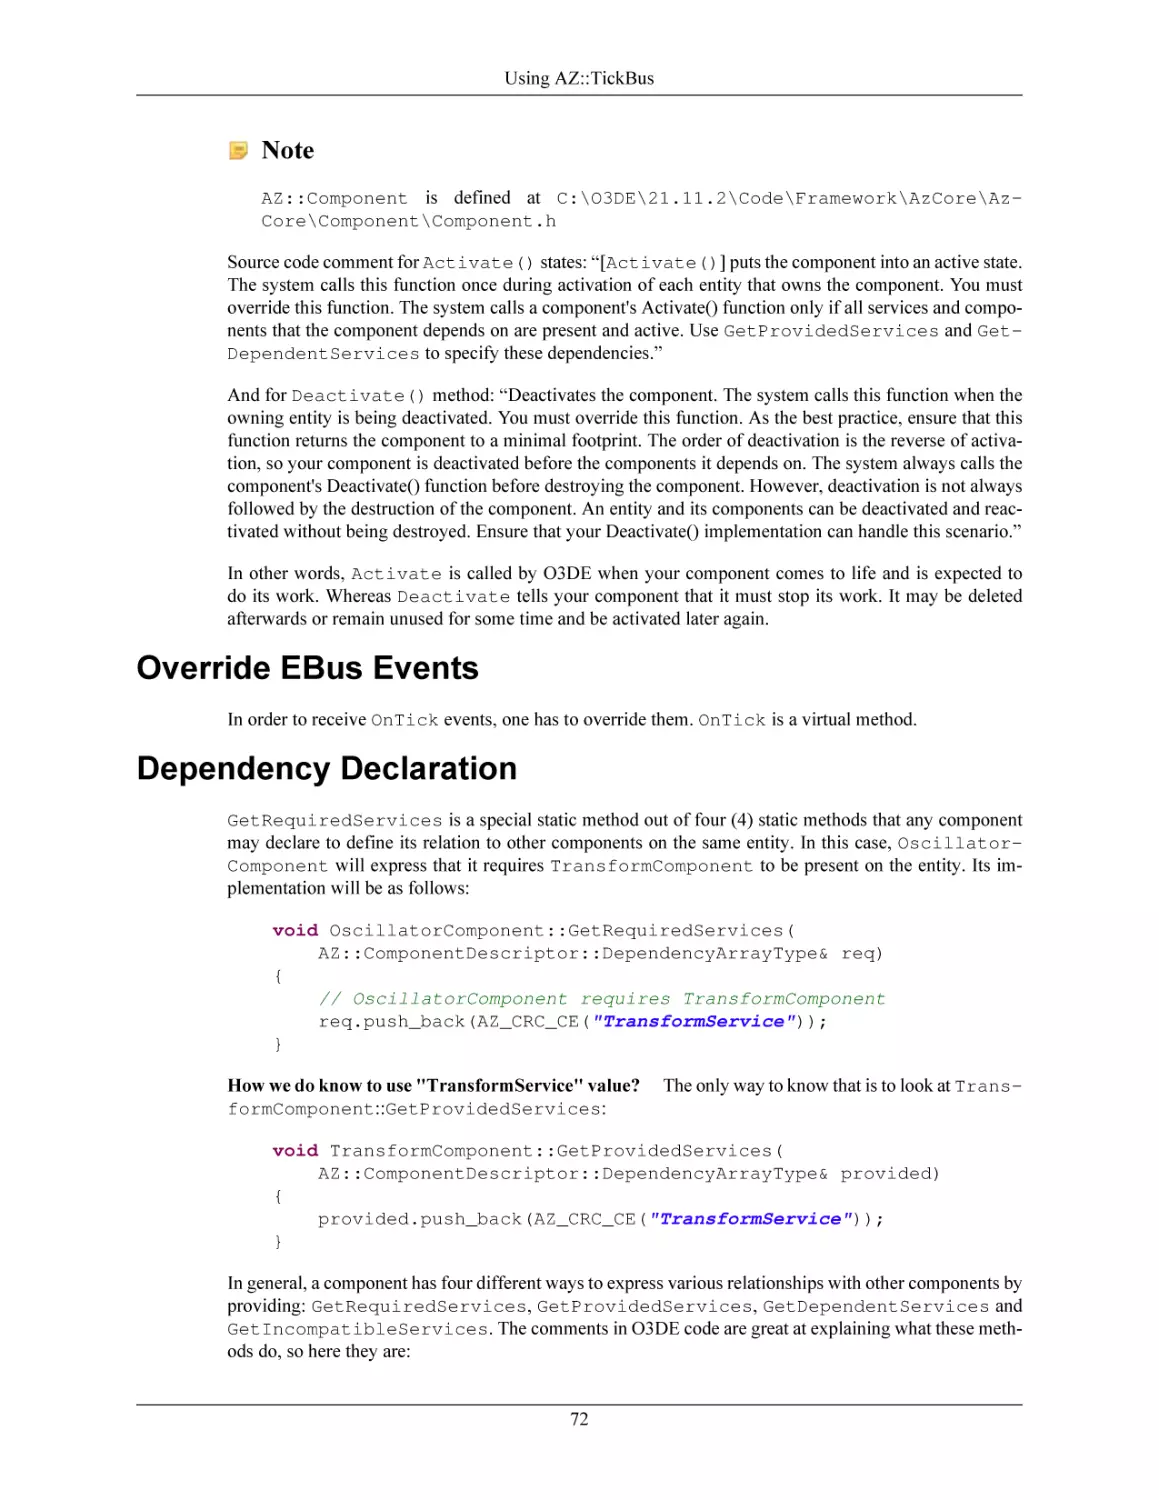 Override EBus Events
Dependency Declaration